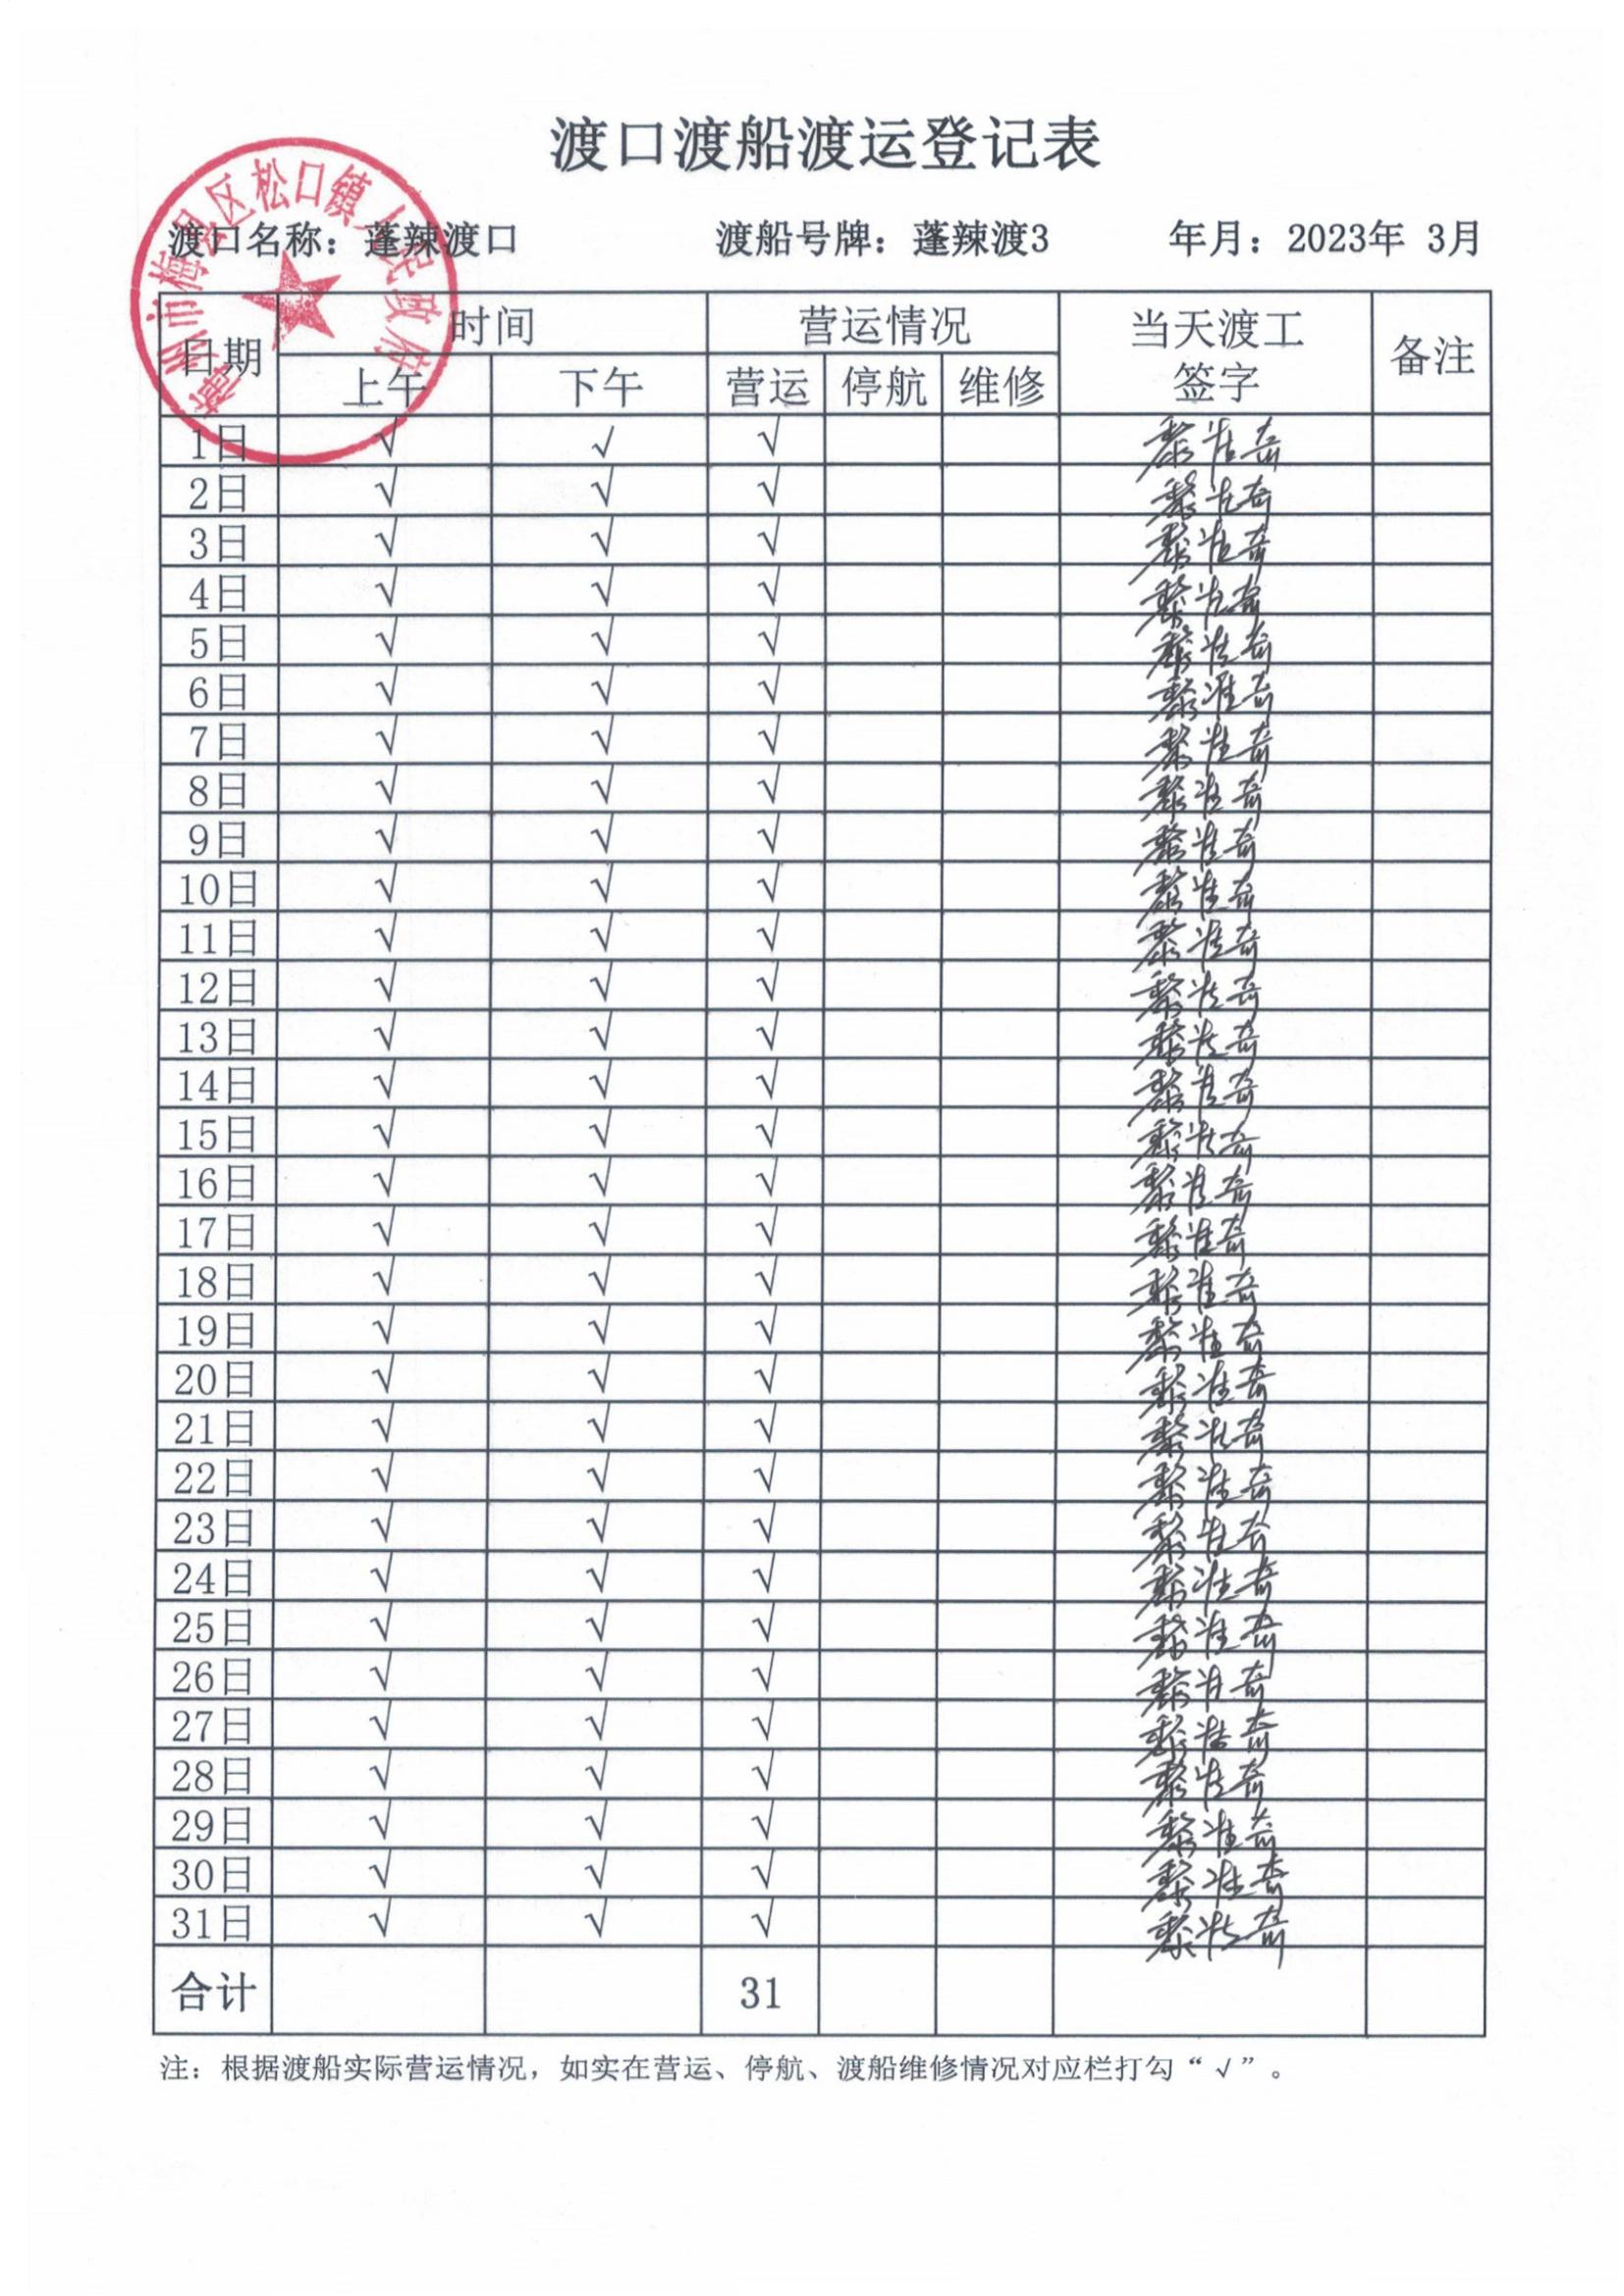 2023年3月渡口渡船渡运登记表及渡船维修保养情况表_00.jpg